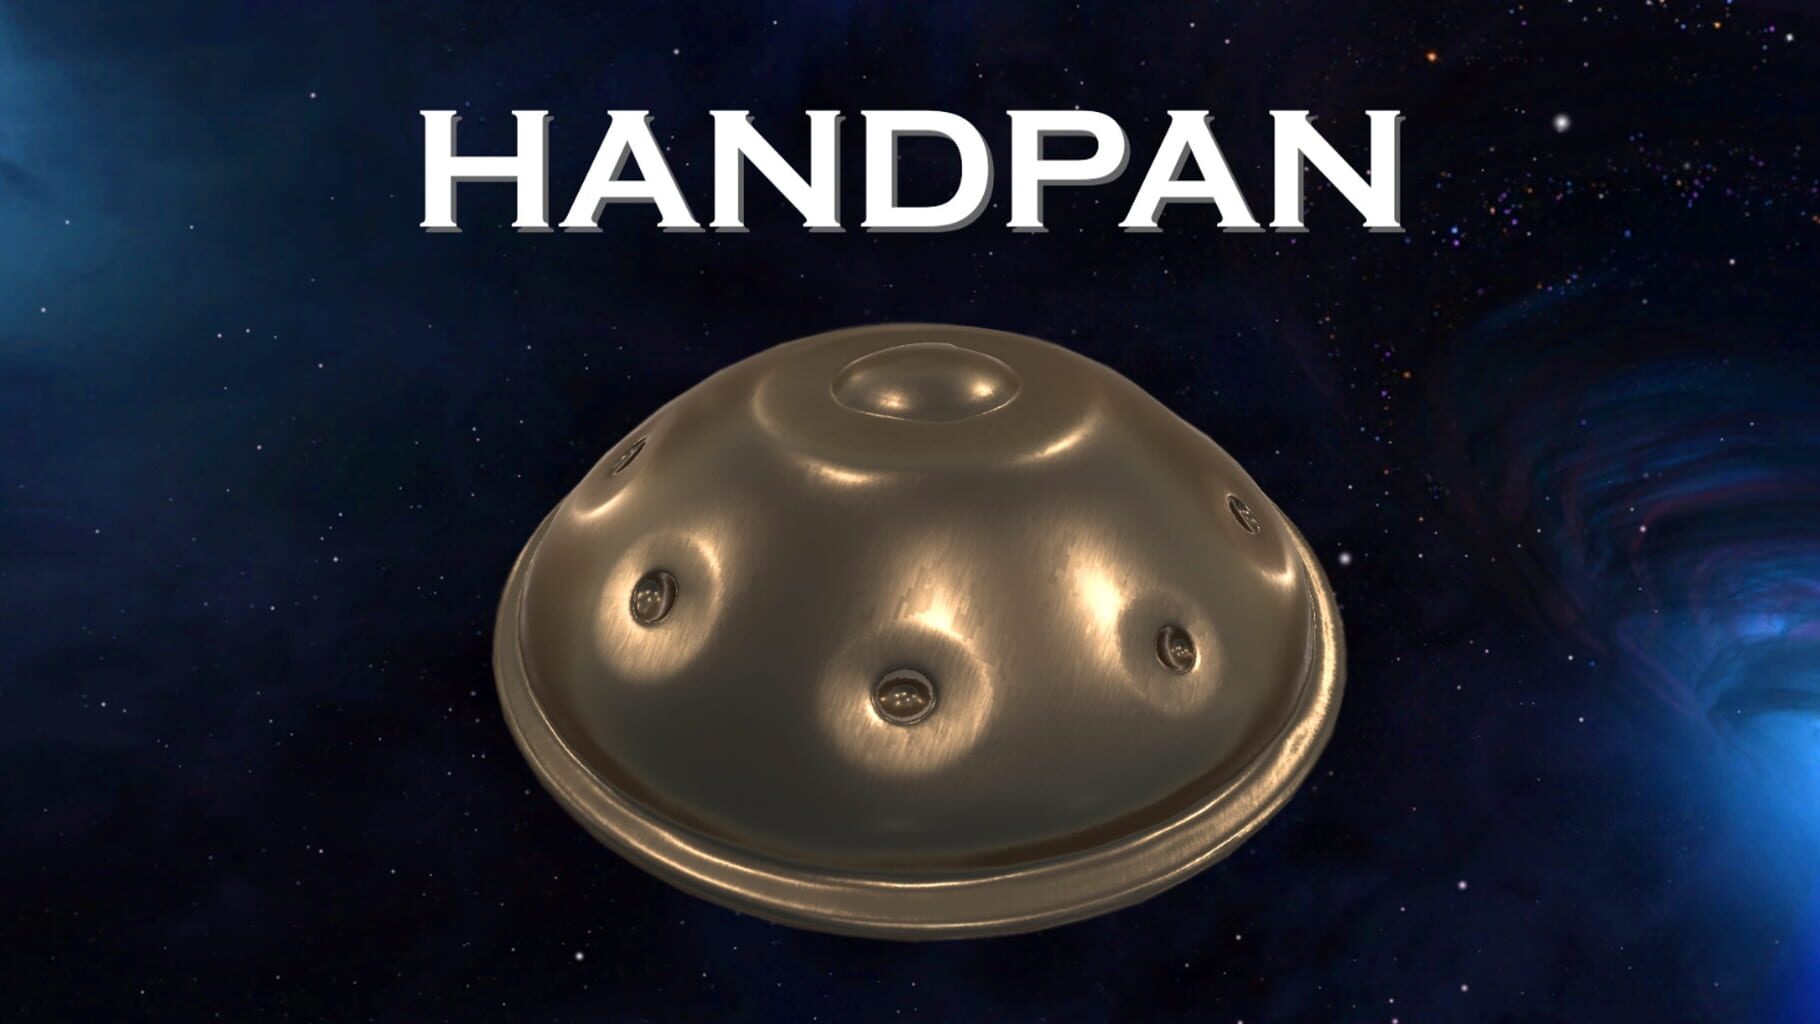 Handpan artwork